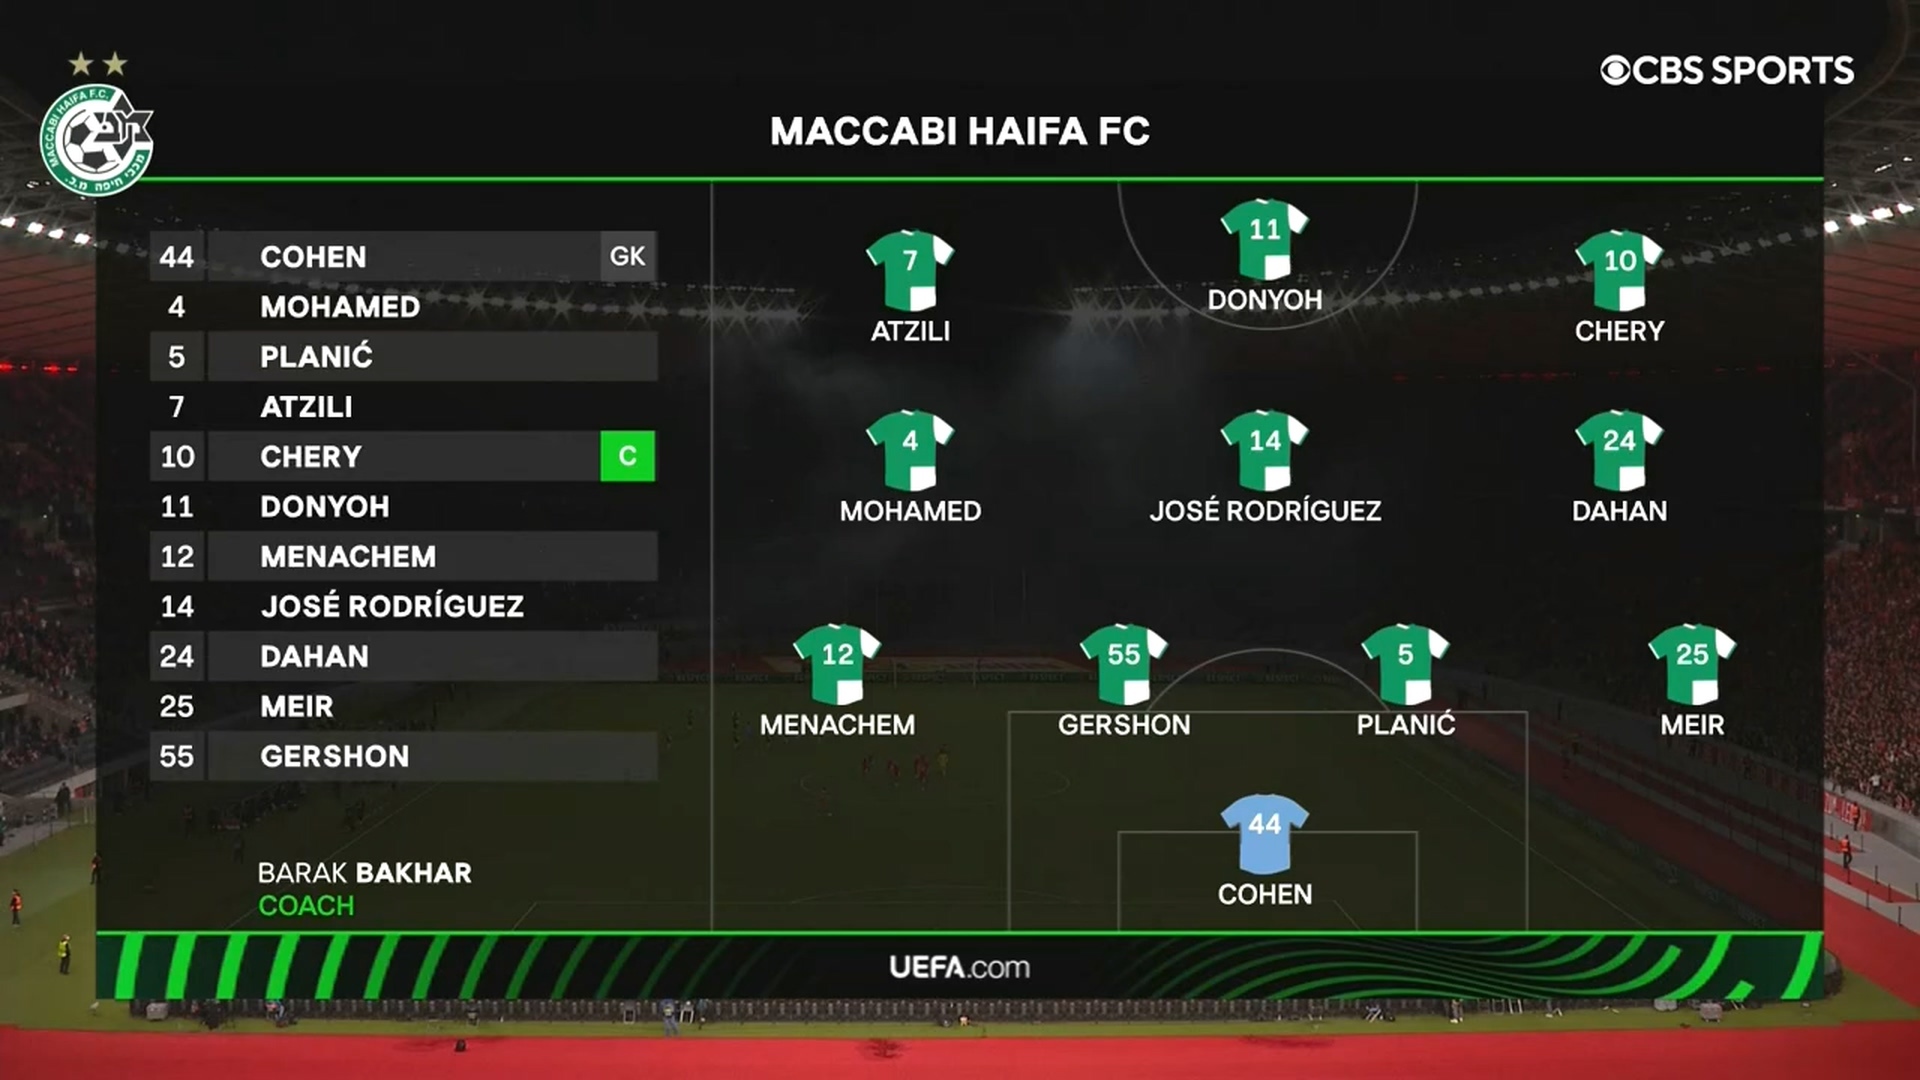 Union Berlin Vs Maccabi Haifa